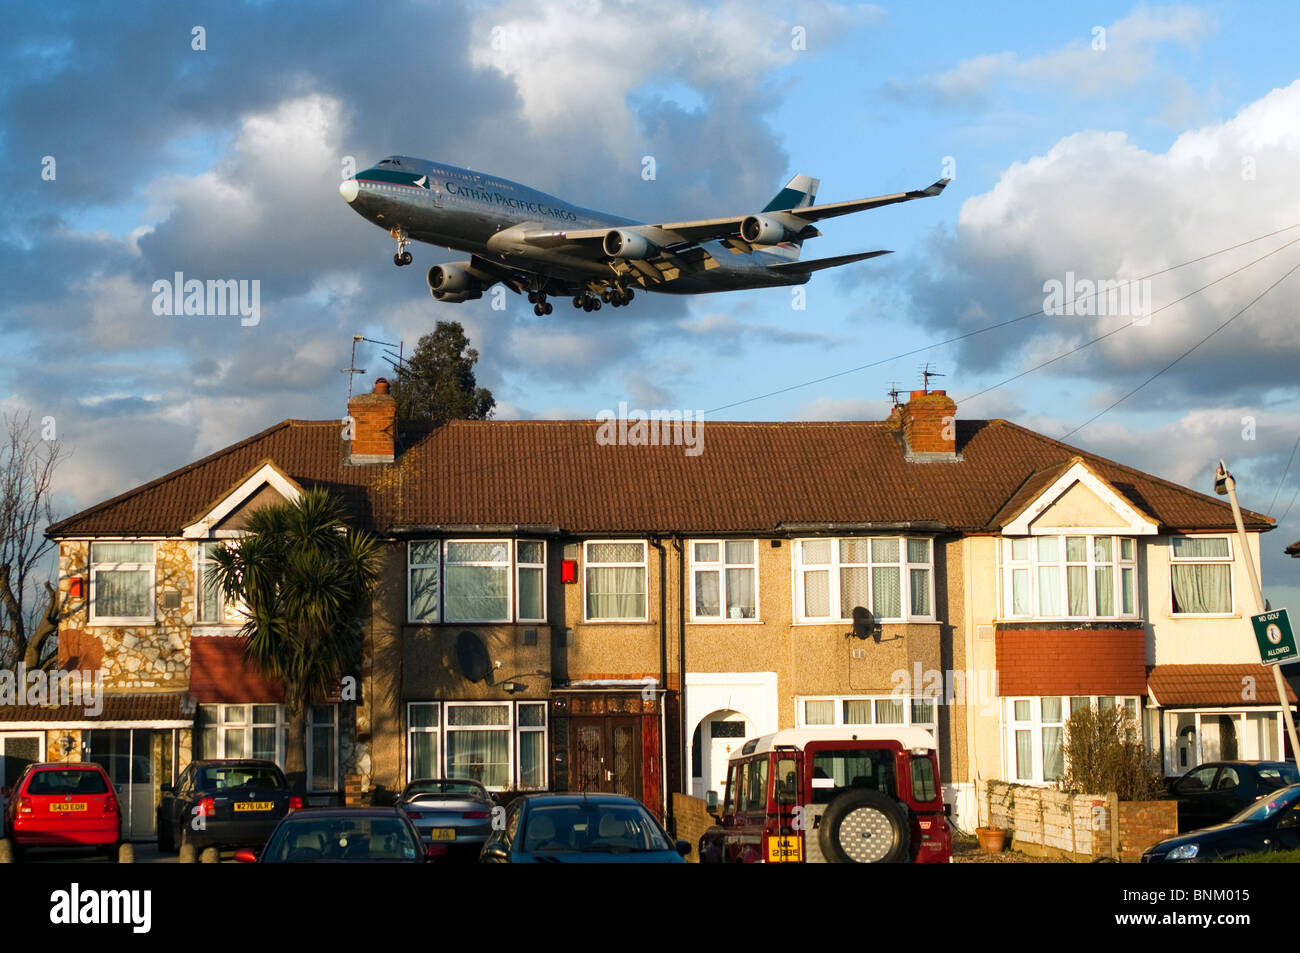 Heathrow pista approccio da parte di Boeing 747, Cathay Pacific Cargo, atterrando all'Aeroporto Heathrow di Londra, Regno Unito. Myrtle Avenue case in foregound. Foto Stock